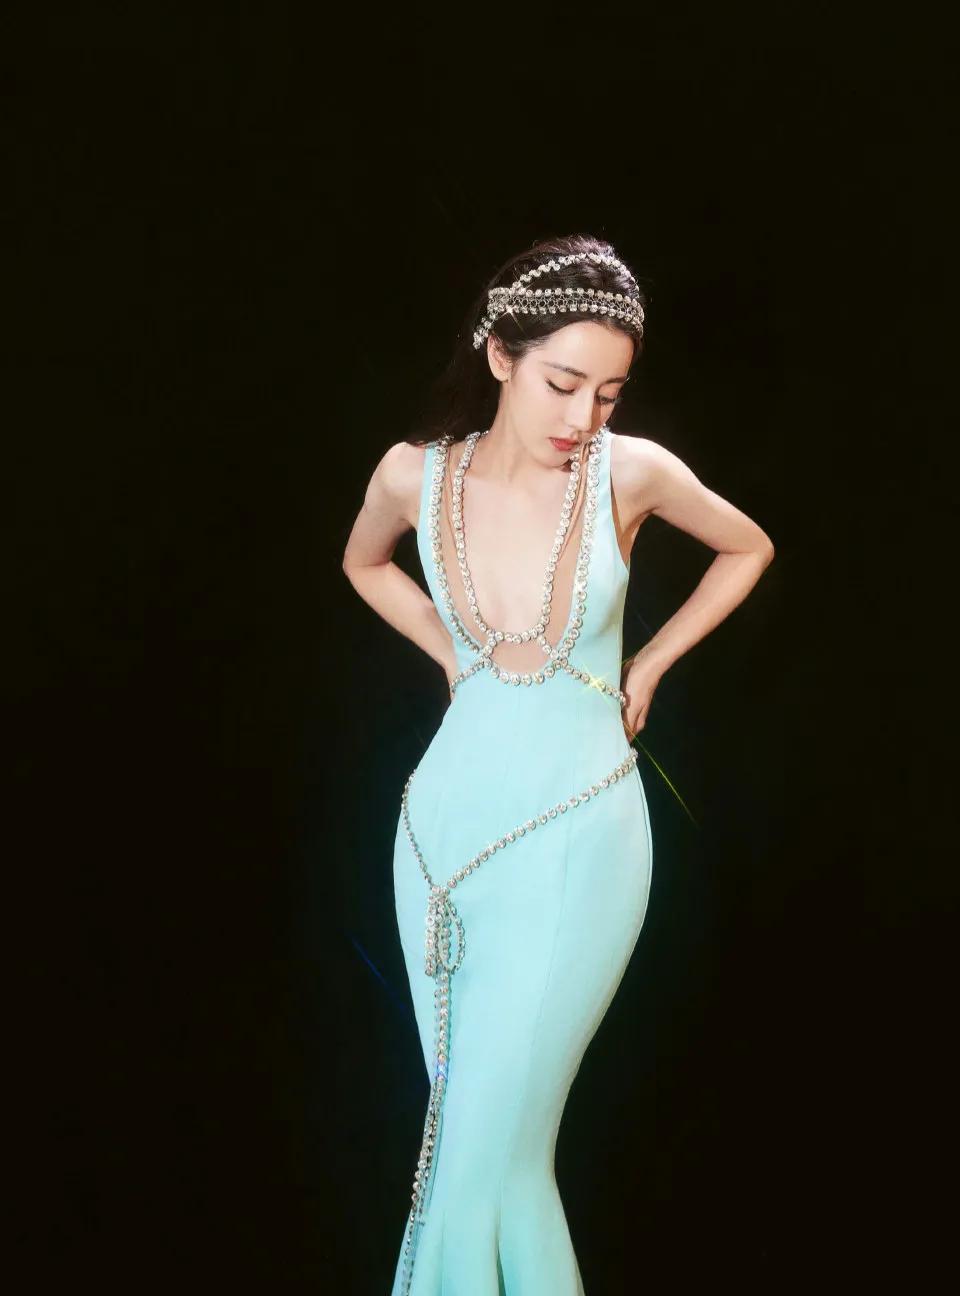 时尚芭莎盛典,迪丽热巴一袭蓝色鱼尾裙,如刚出水的美人鱼